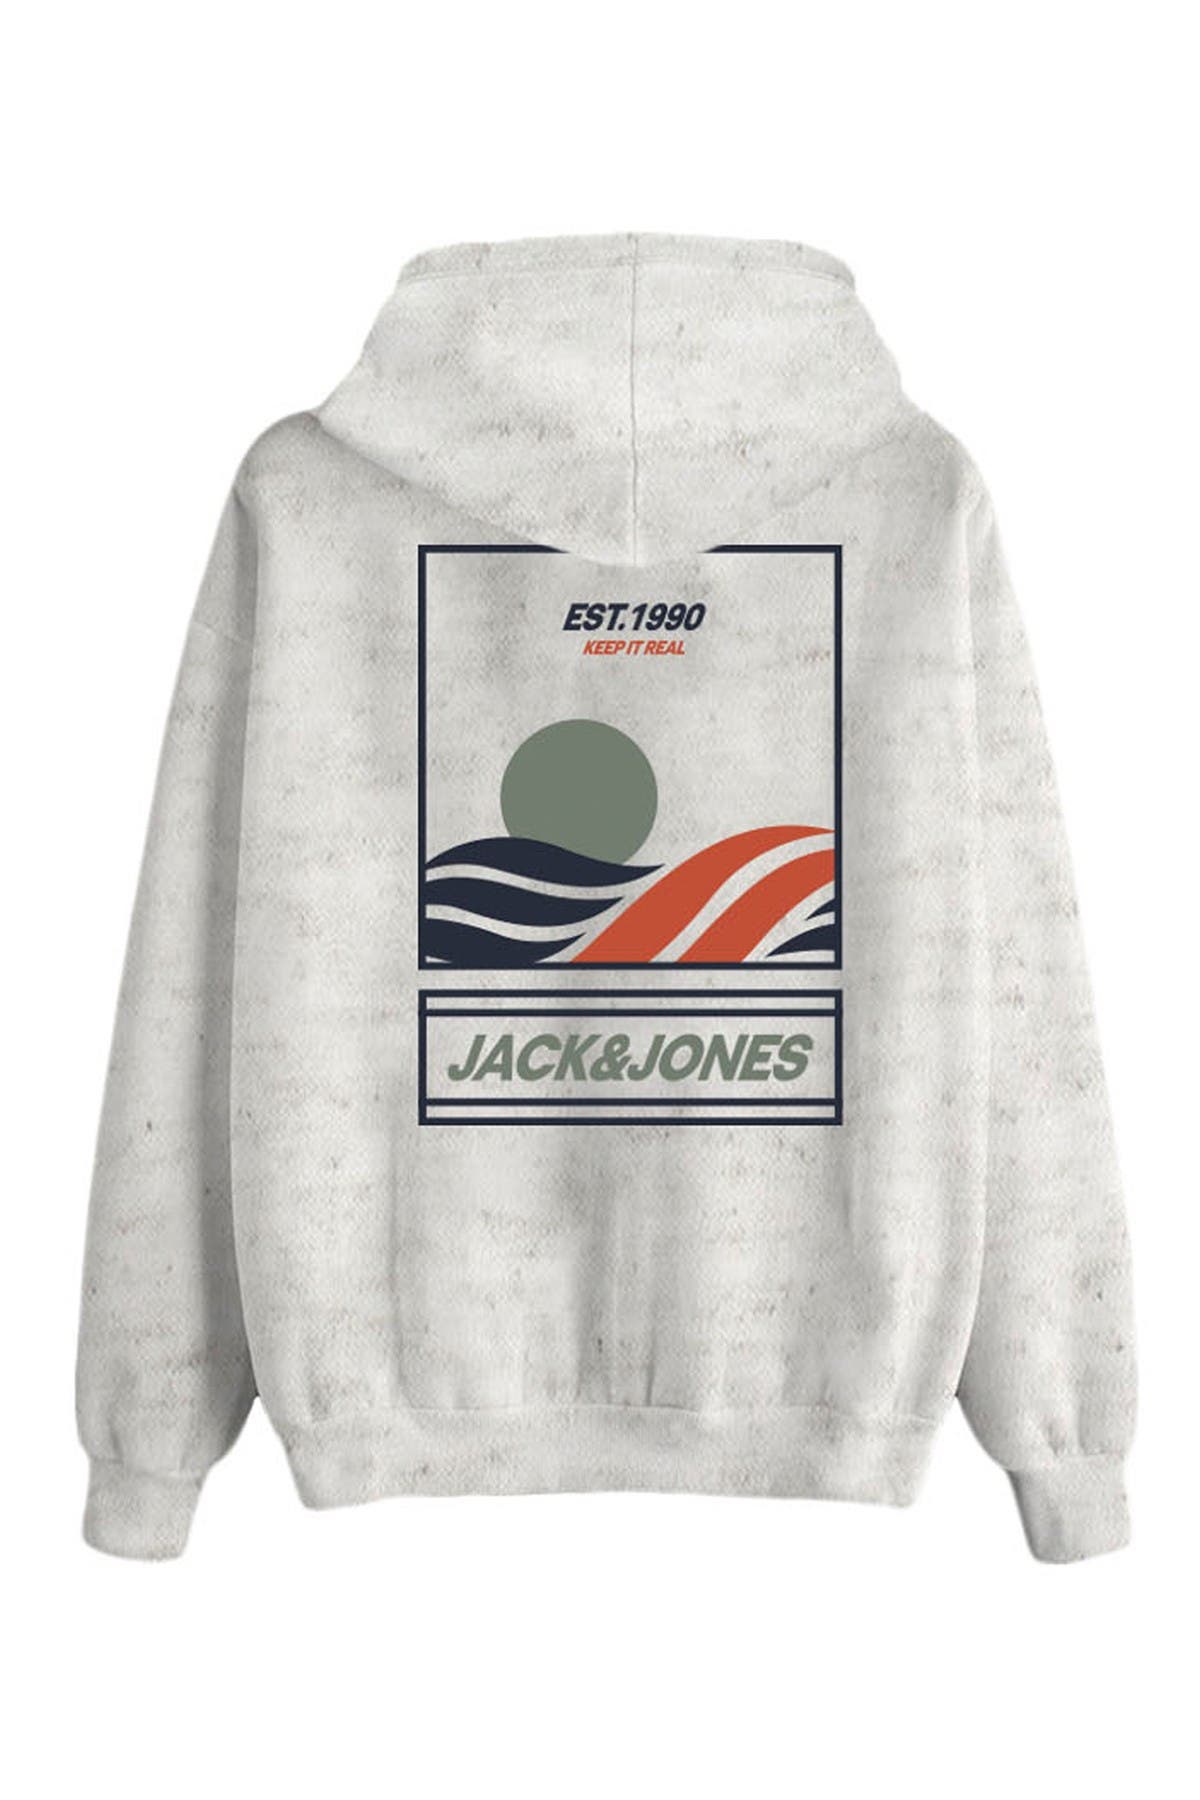 Jack & Jones Graphic Hooded Sweatshirt In Natural